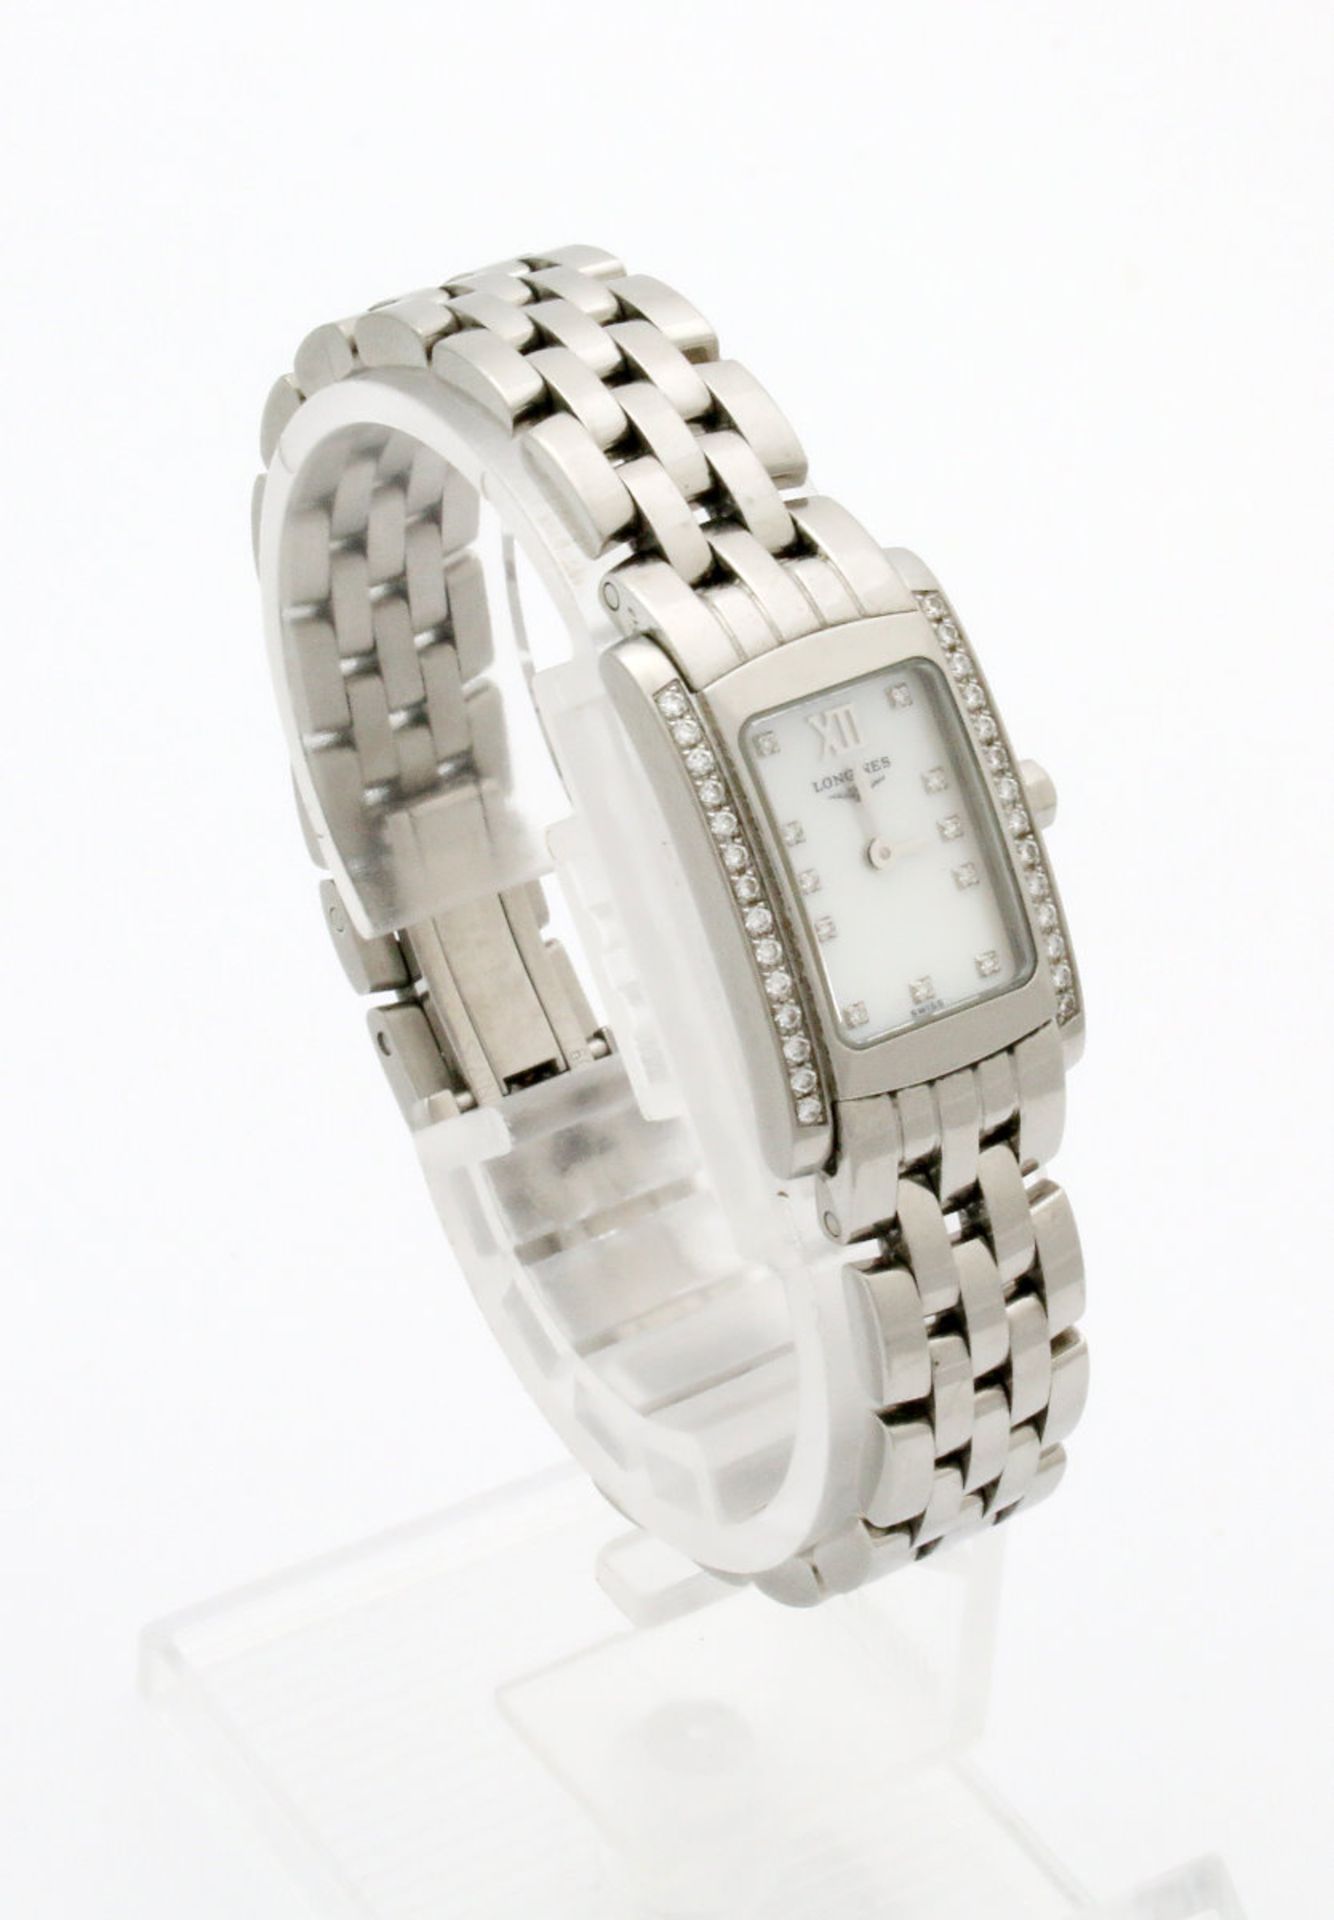 Armbanduhr Longines "Dolce Vita" mit Brillanten Quarzwerk, Edelstahlgehäuse, Maße: 27 x 16 mm,